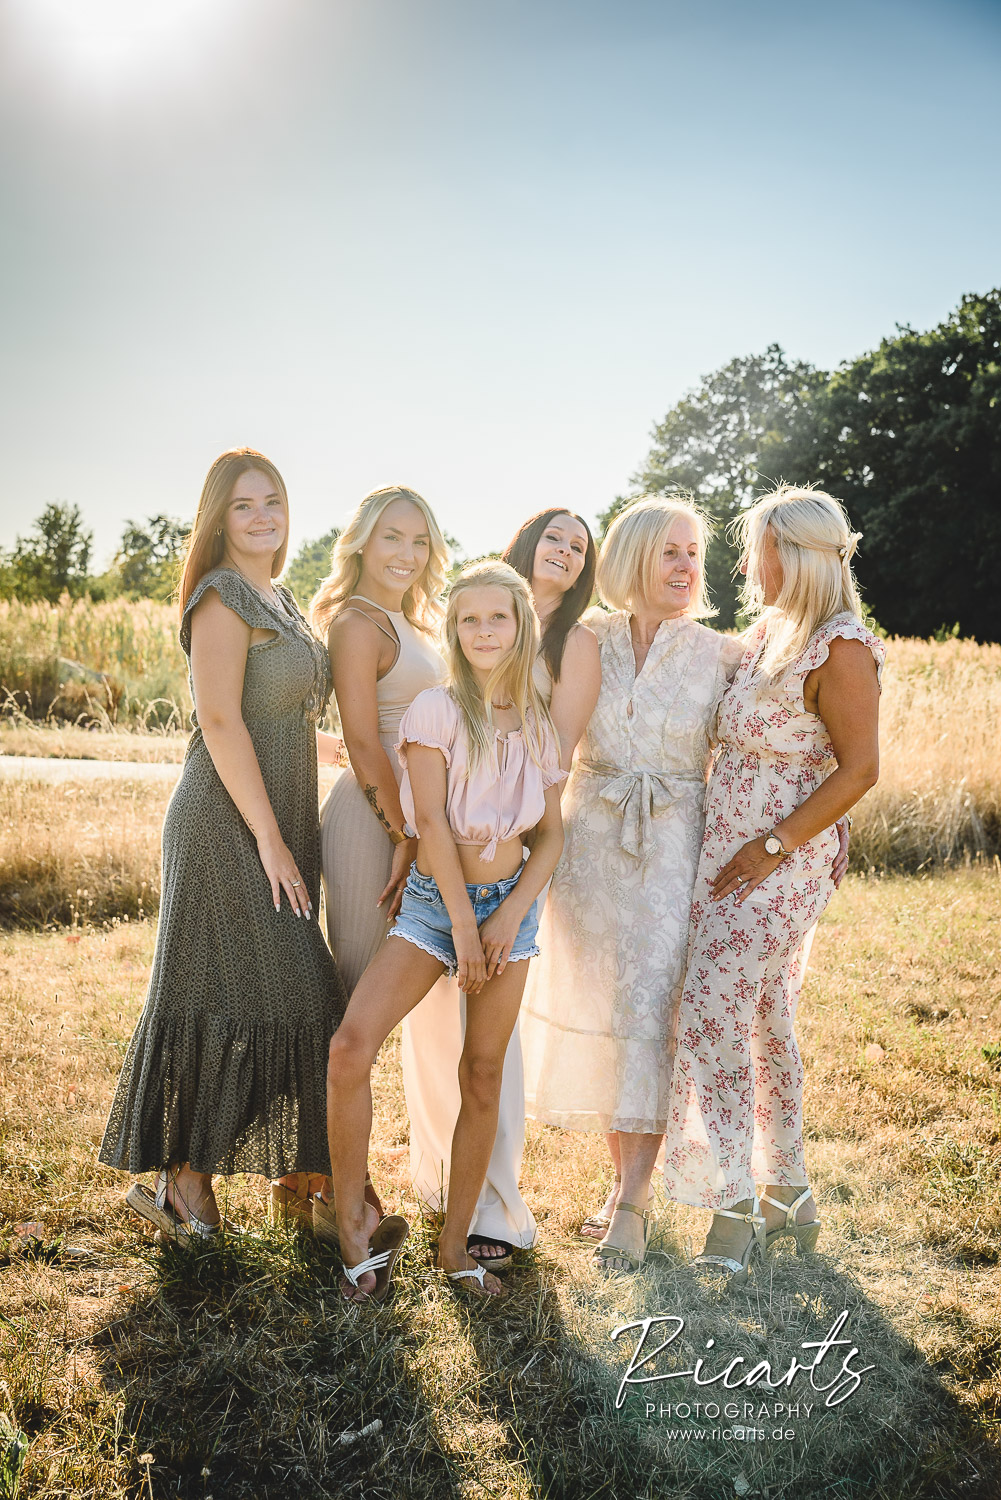 Familienfoto-auf-Sommerwiese-Mutter-mit-Töchtern-und-Enkeln